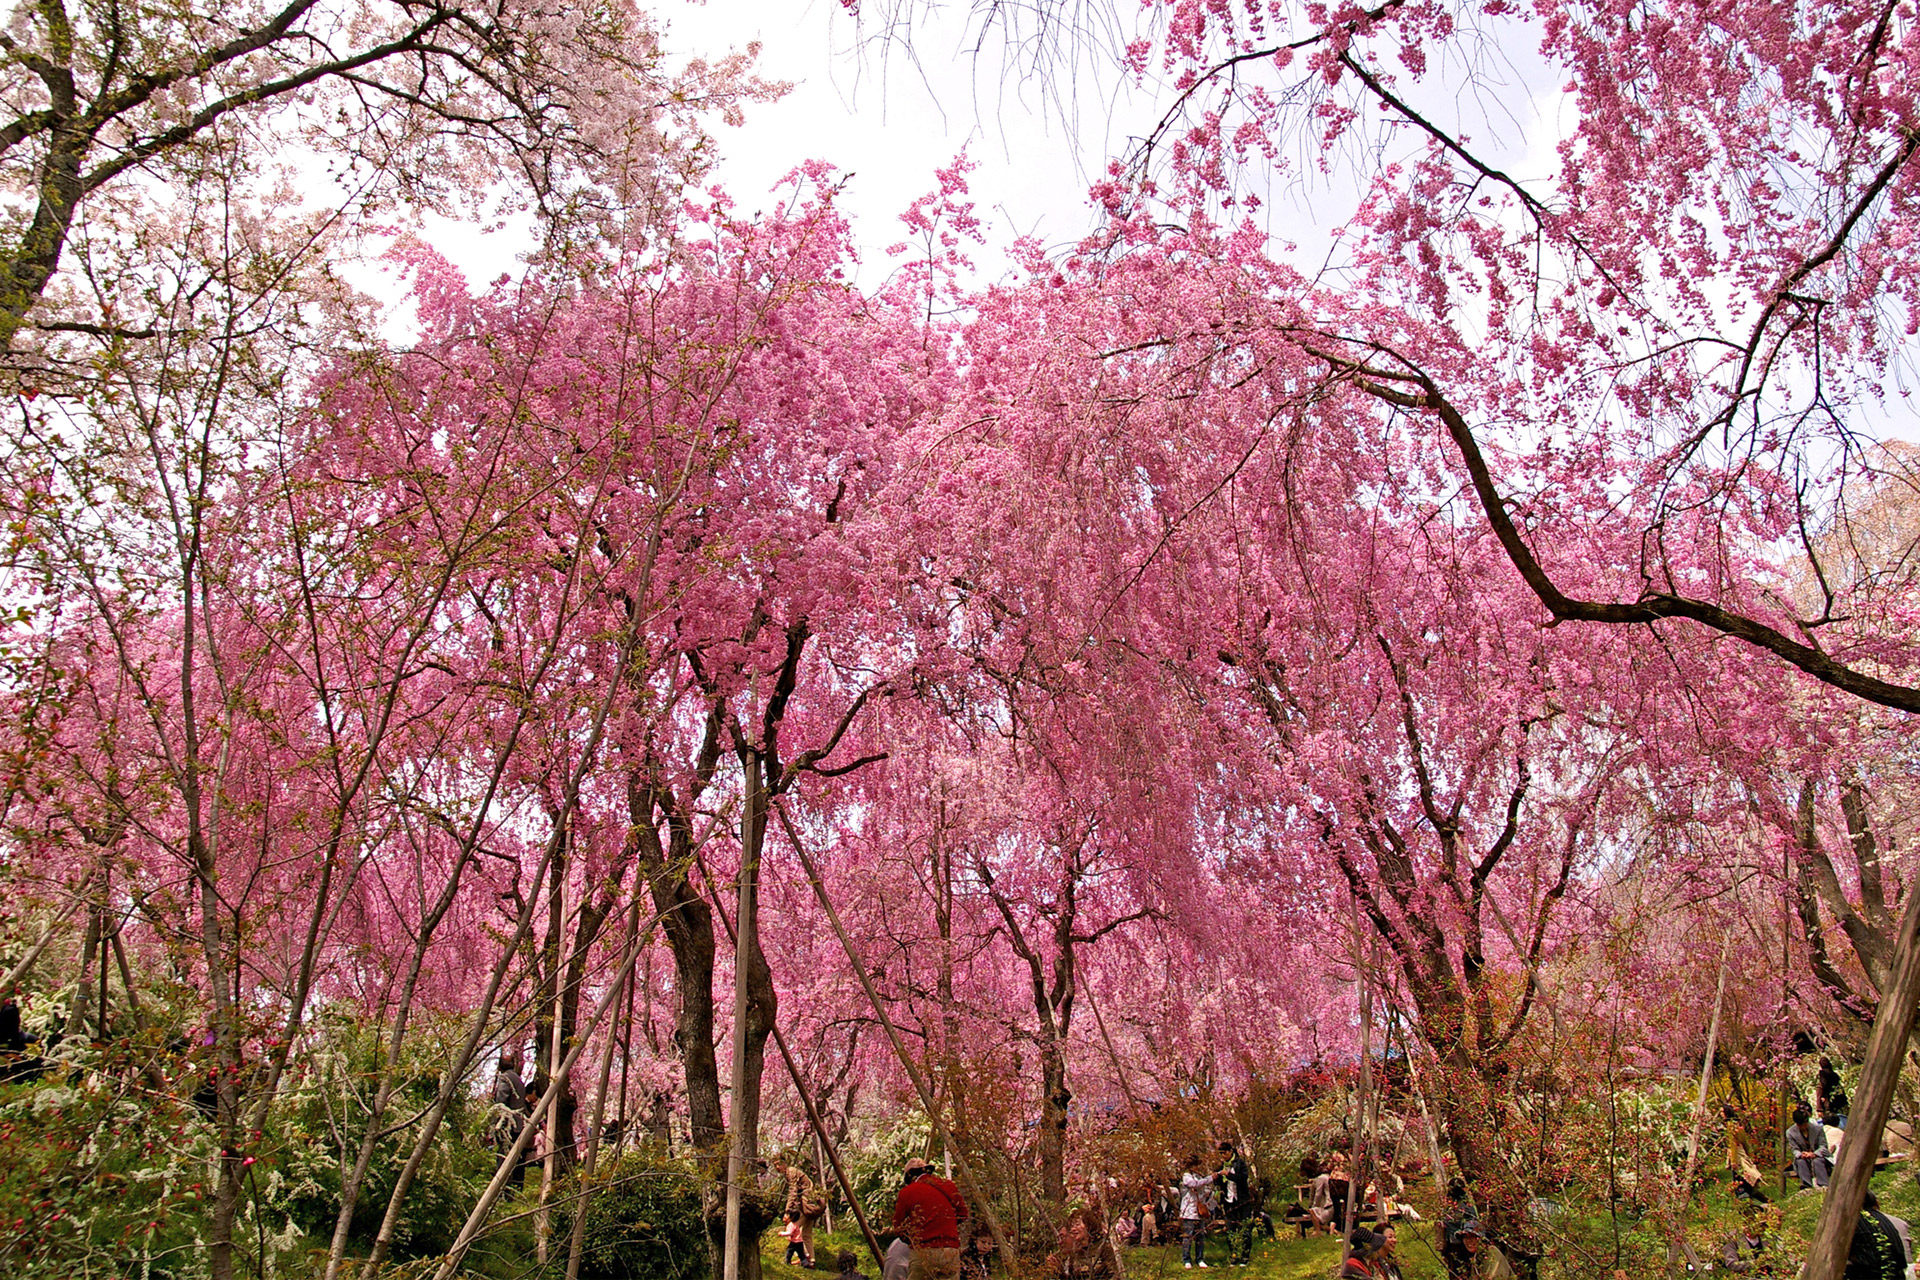 京都 原谷苑 は隠れた桜の名所 静かな中で桜をじっくり愛でるにはおすすめ Caedekyoto カエデ京都 紅葉と伝統美を引き継ぐバッグ